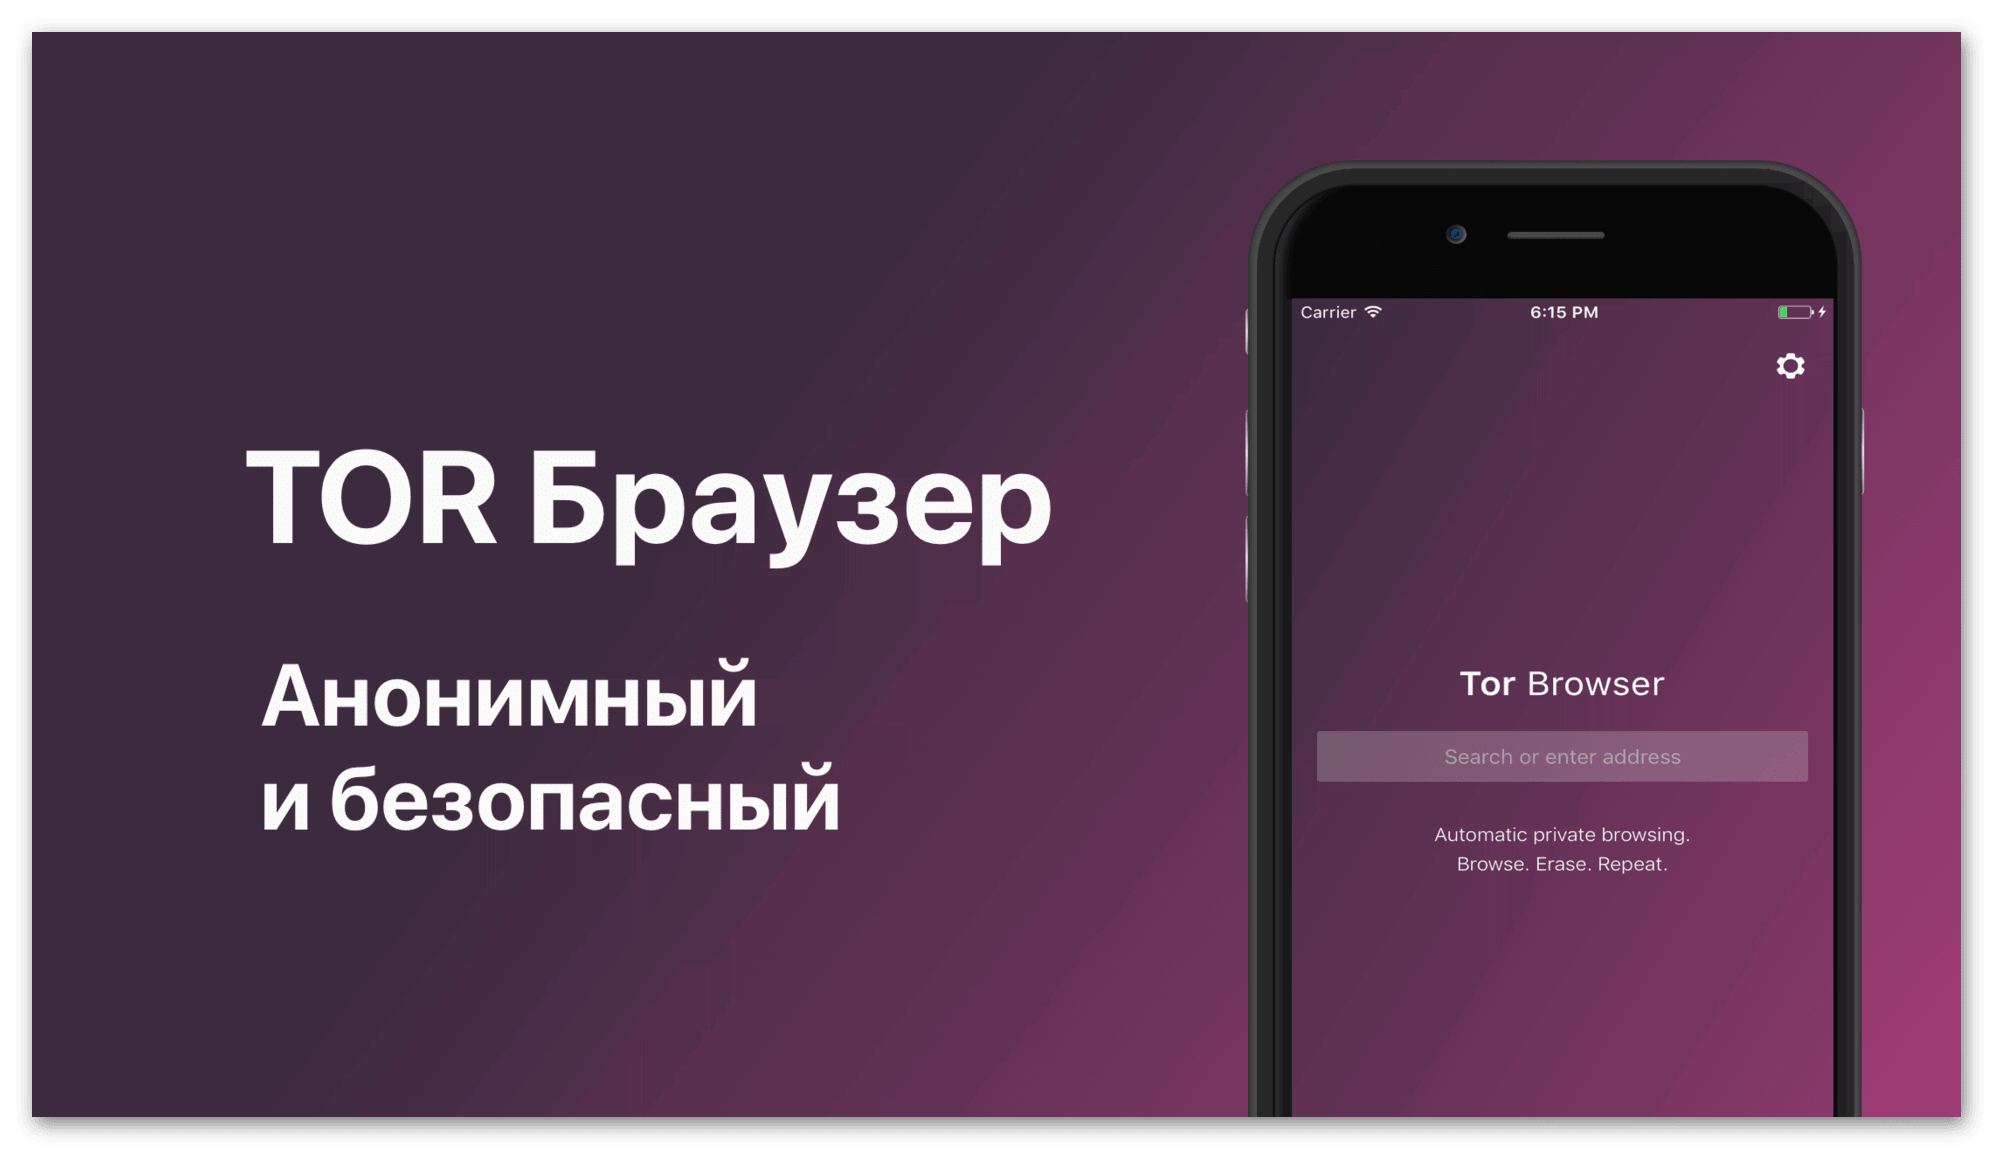 Тор браузер скачать бесплатно для айфона mega скачать тор браузер с официального сайта на русском бесплатно через торрент megaruzxpnew4af